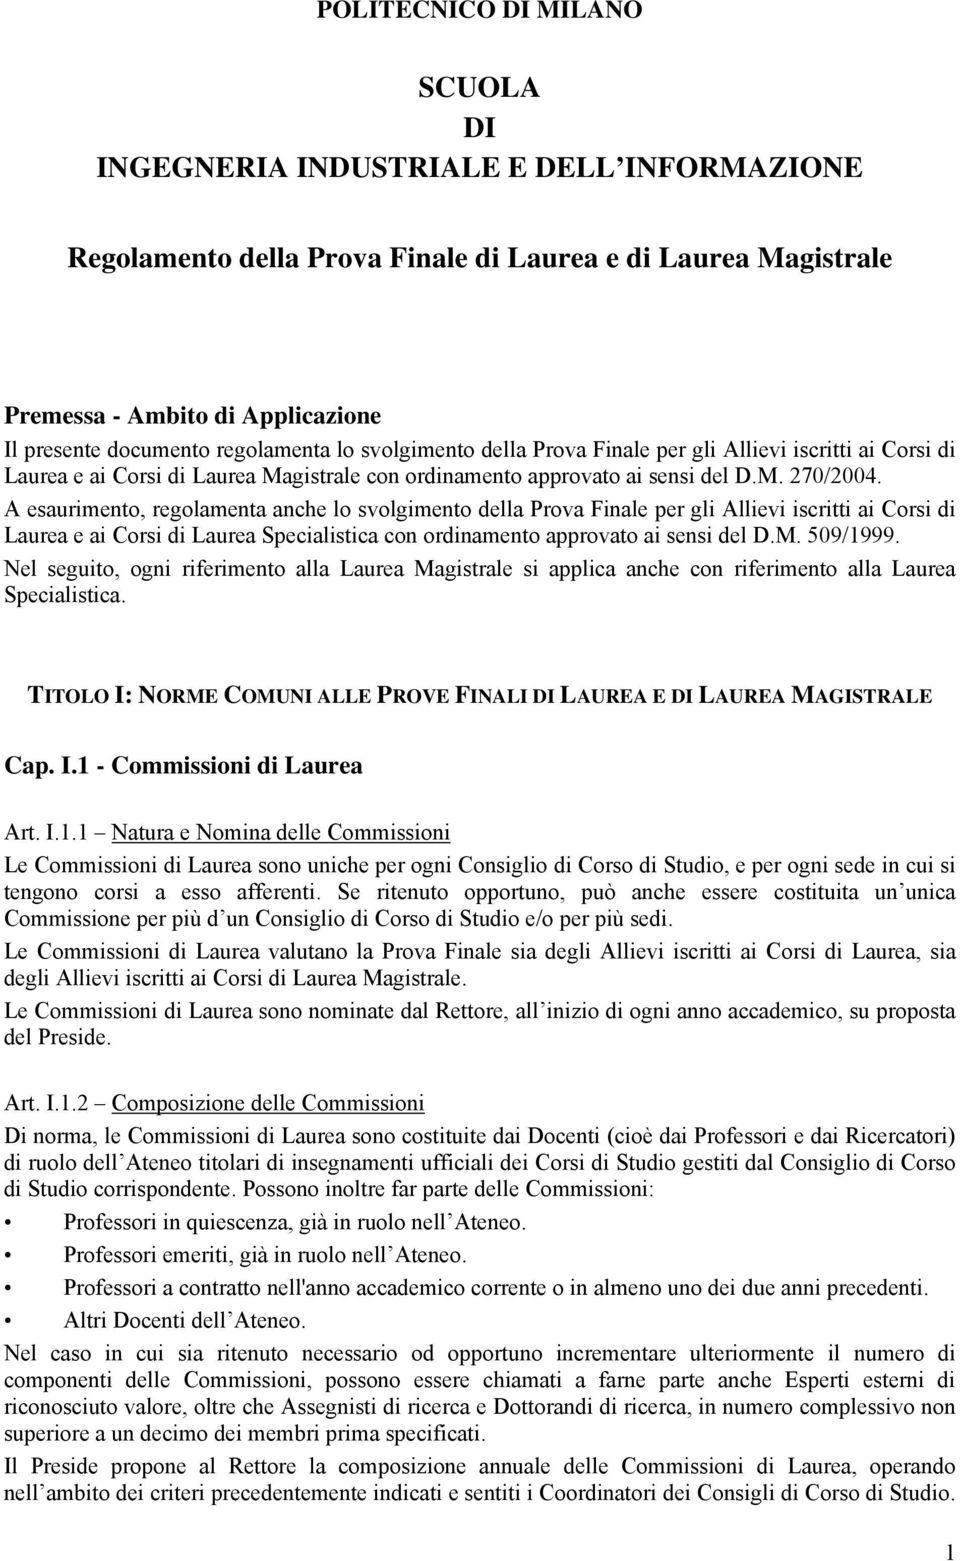 A esaurimento, regolamenta anche lo svolgimento della Prova Finale per gli Allievi iscritti ai Corsi di Laurea e ai Corsi di Laurea Specialistica con ordinamento approvato ai sensi del D.M. 509/1999.